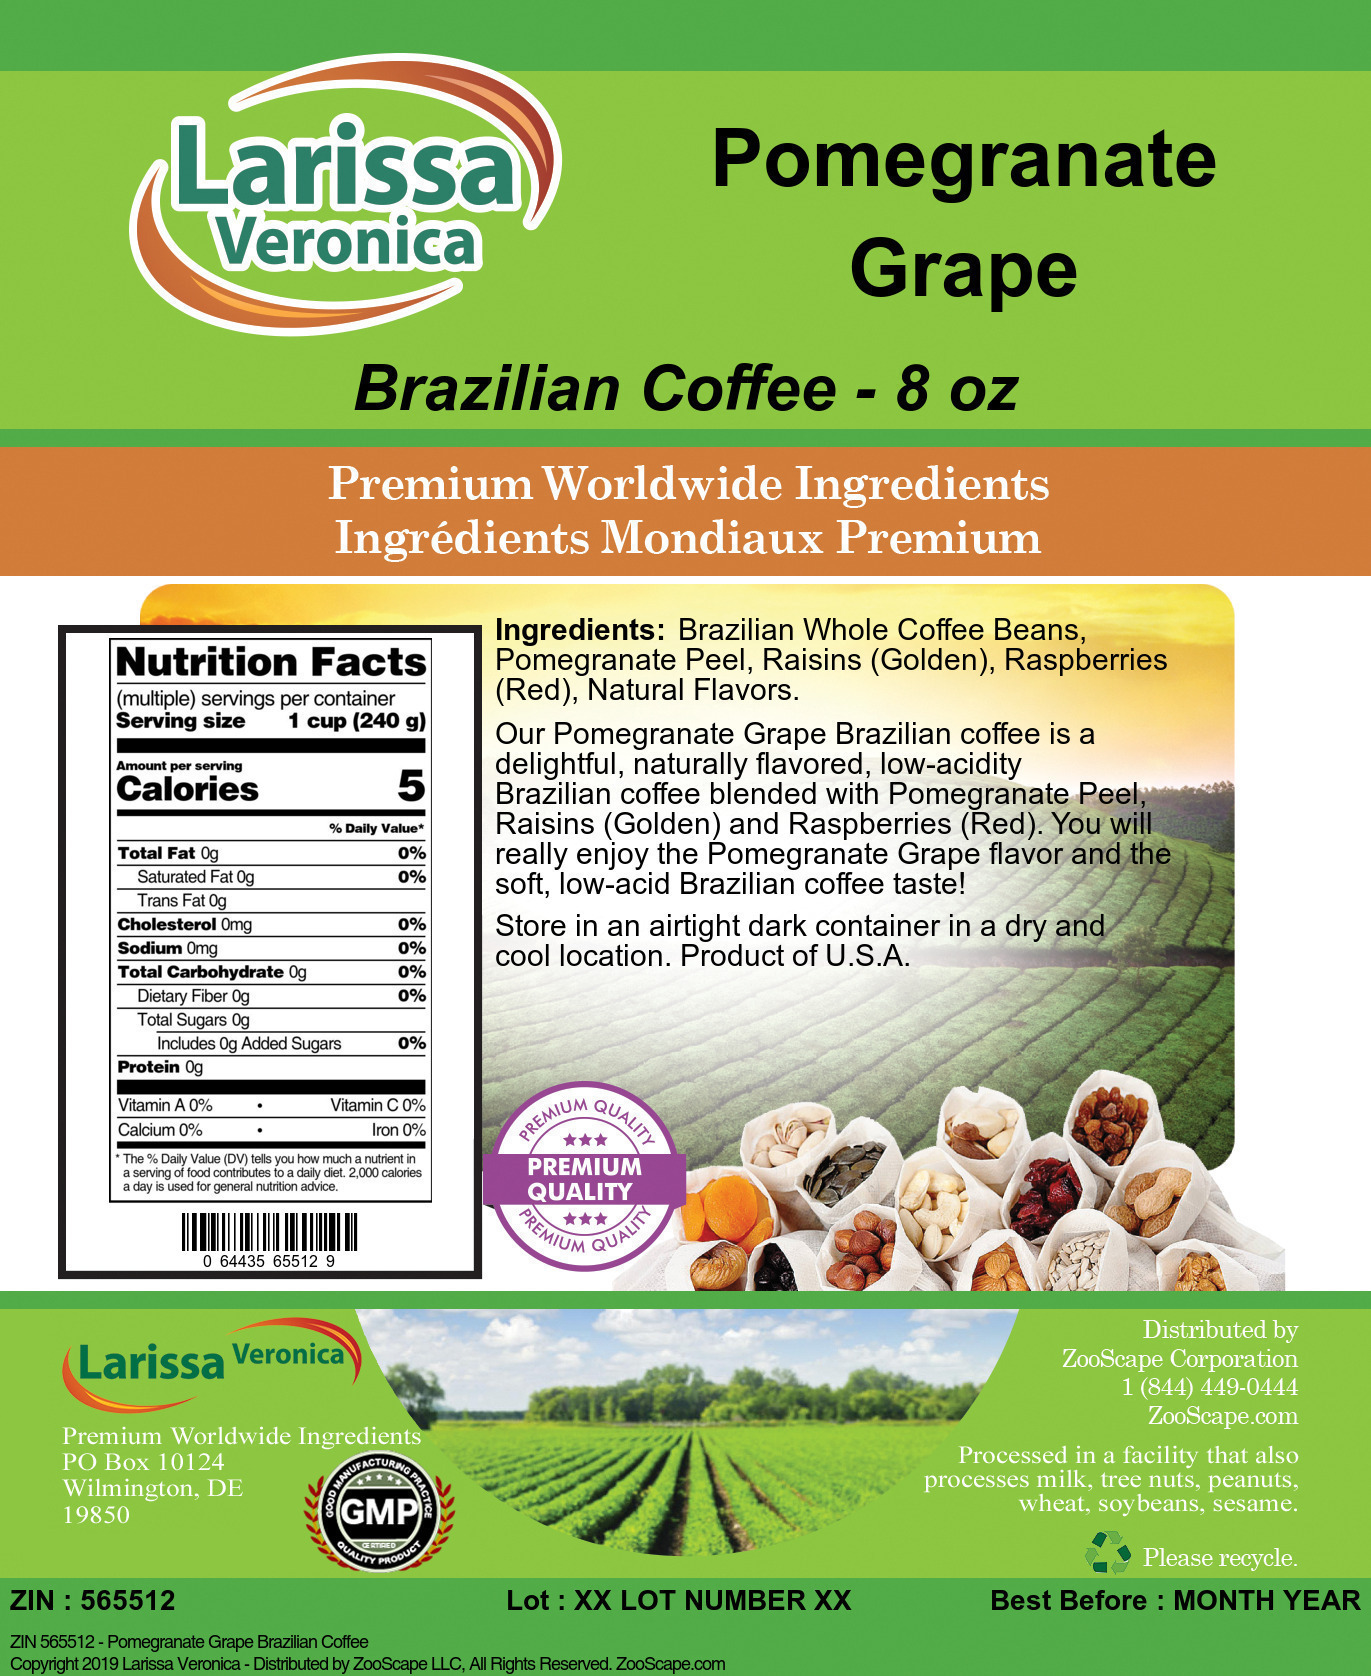 Pomegranate Grape Brazilian Coffee - Label